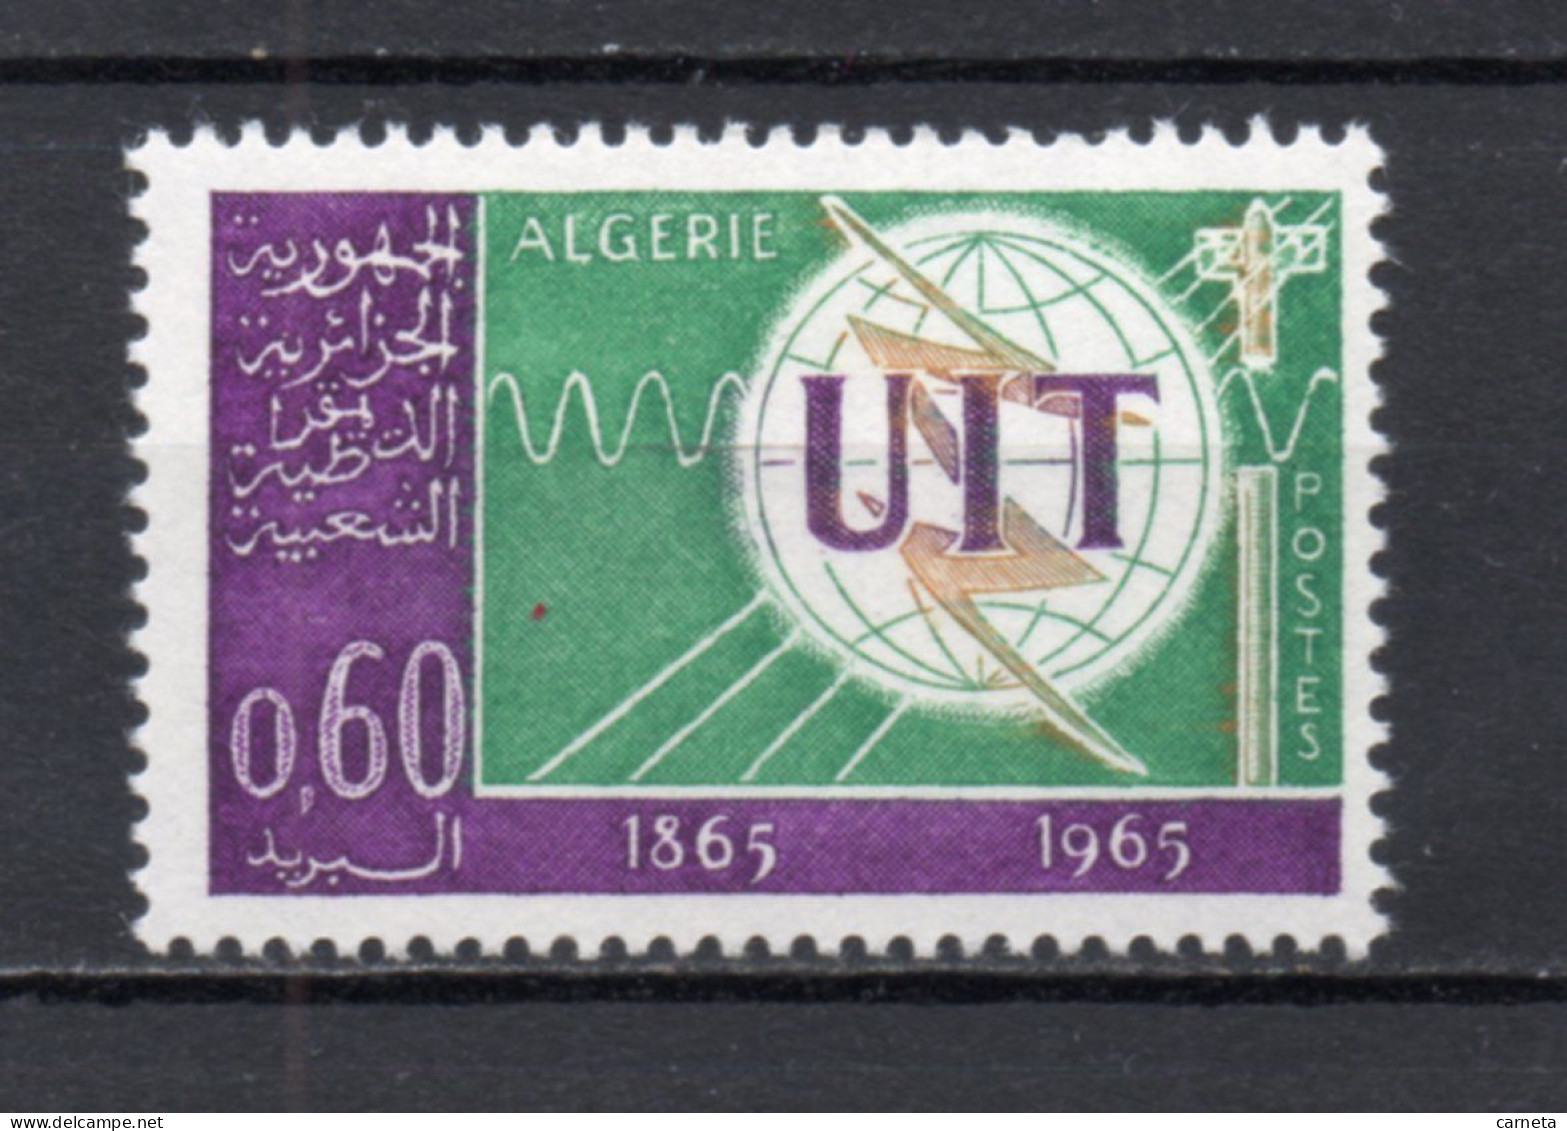 ALGERIE N° 409   NEUF SANS CHARNIERE COTE 1.20€    TELECOMMUNICATIONS UIT - Algérie (1962-...)